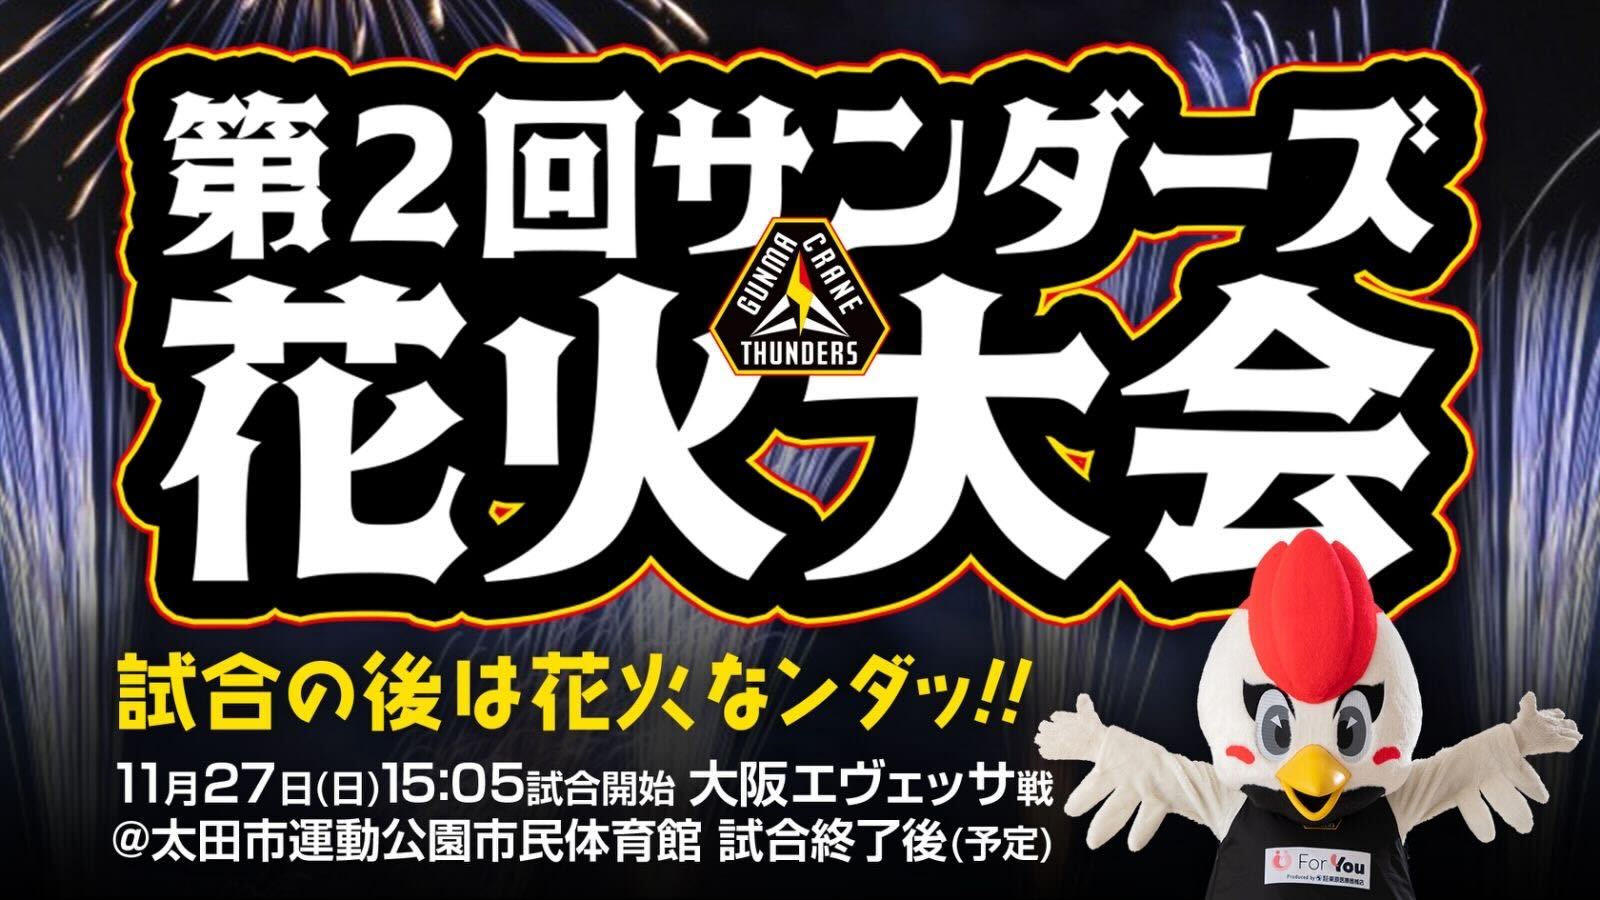 11月27日(日)大阪戦で今年もサンダーズ花火大会の開催が決定いたしました！